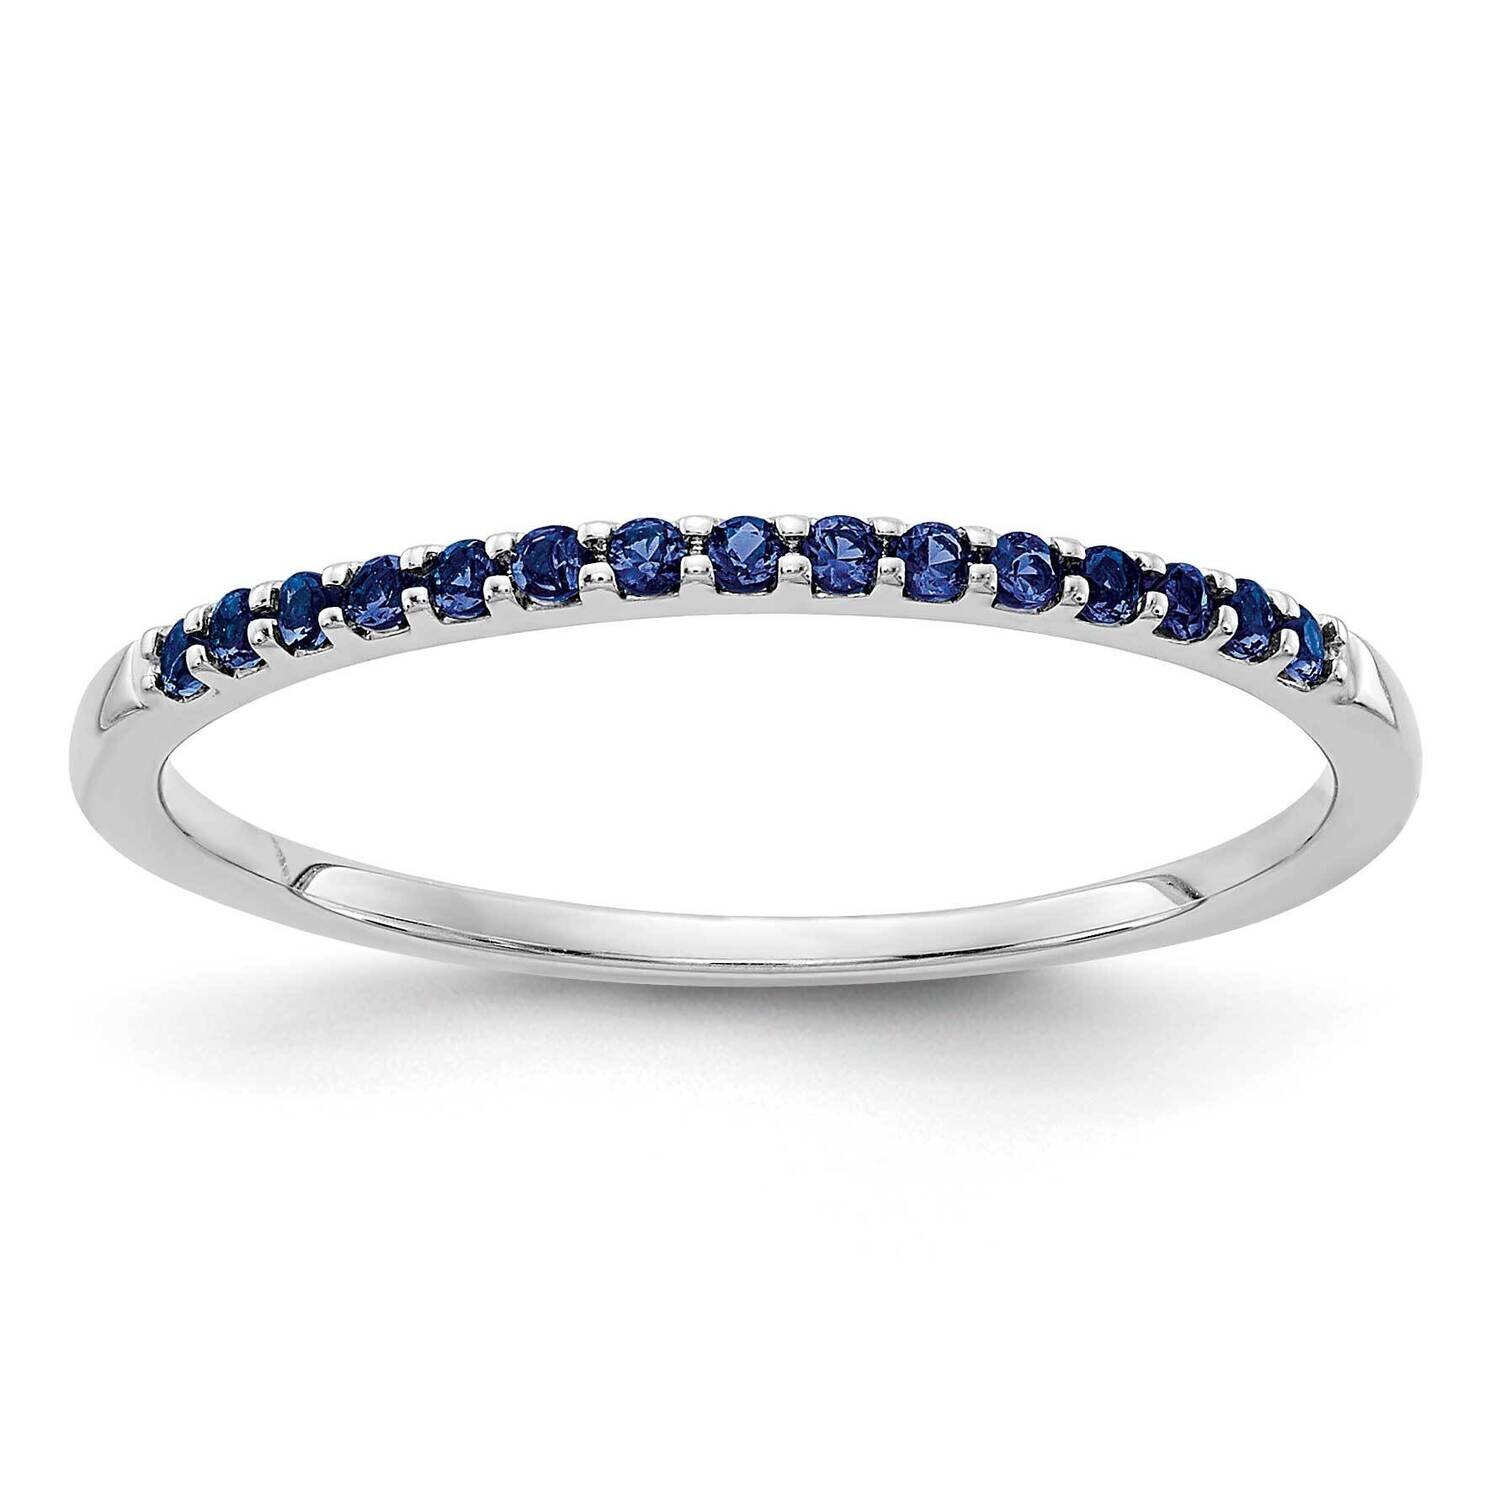 Blue Sapphire Ring 14k White Gold RM5622-SA-W